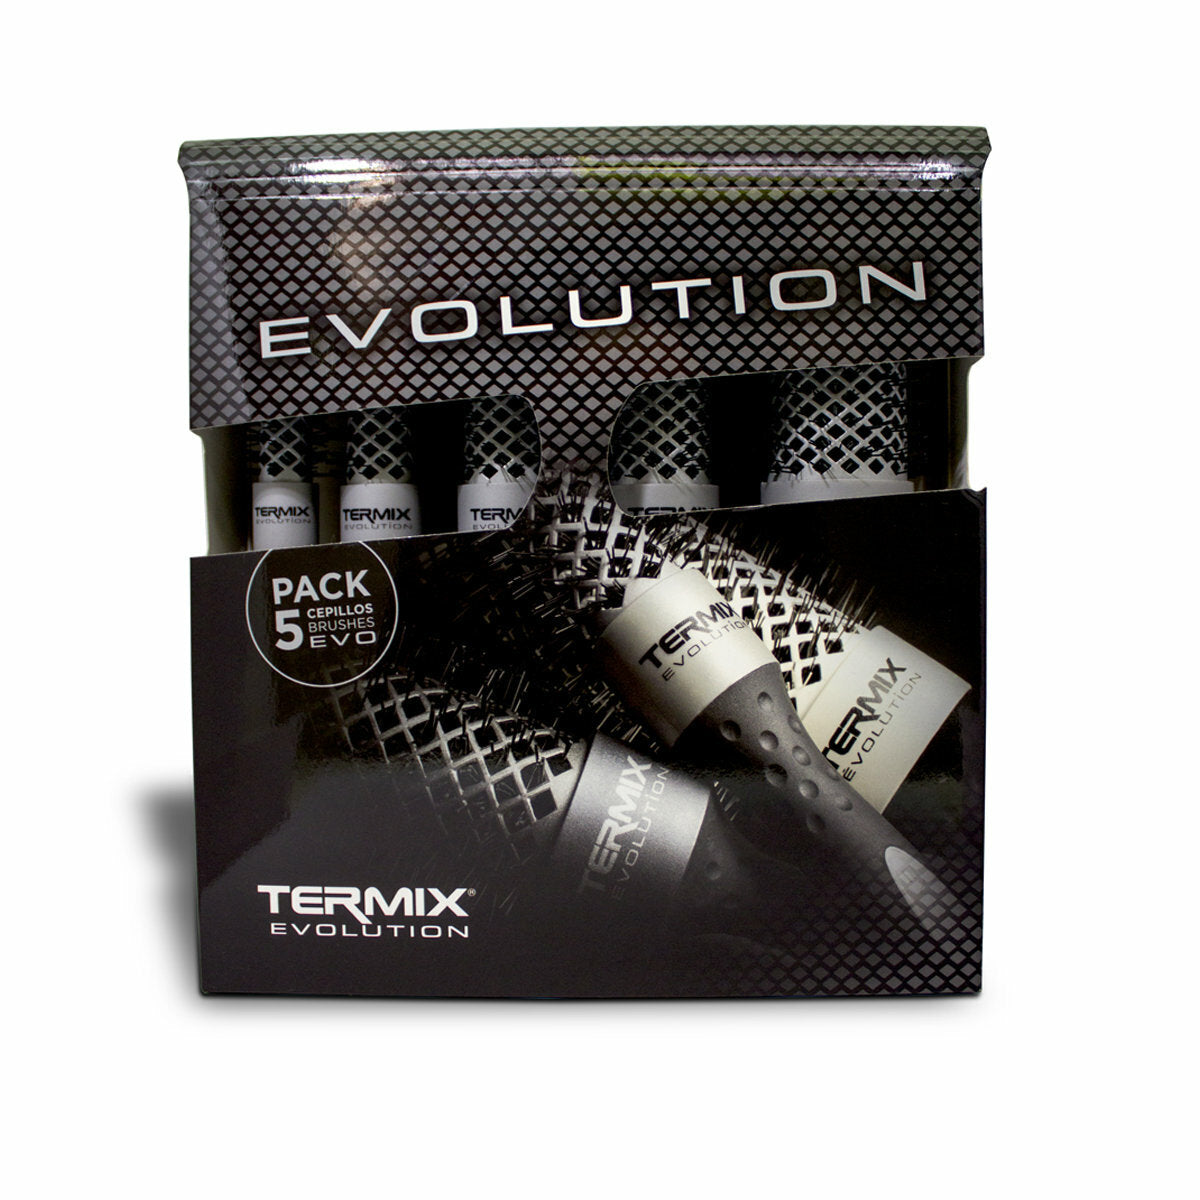 Pack de Cepillos Termix Evolution Plus x 5 unidades